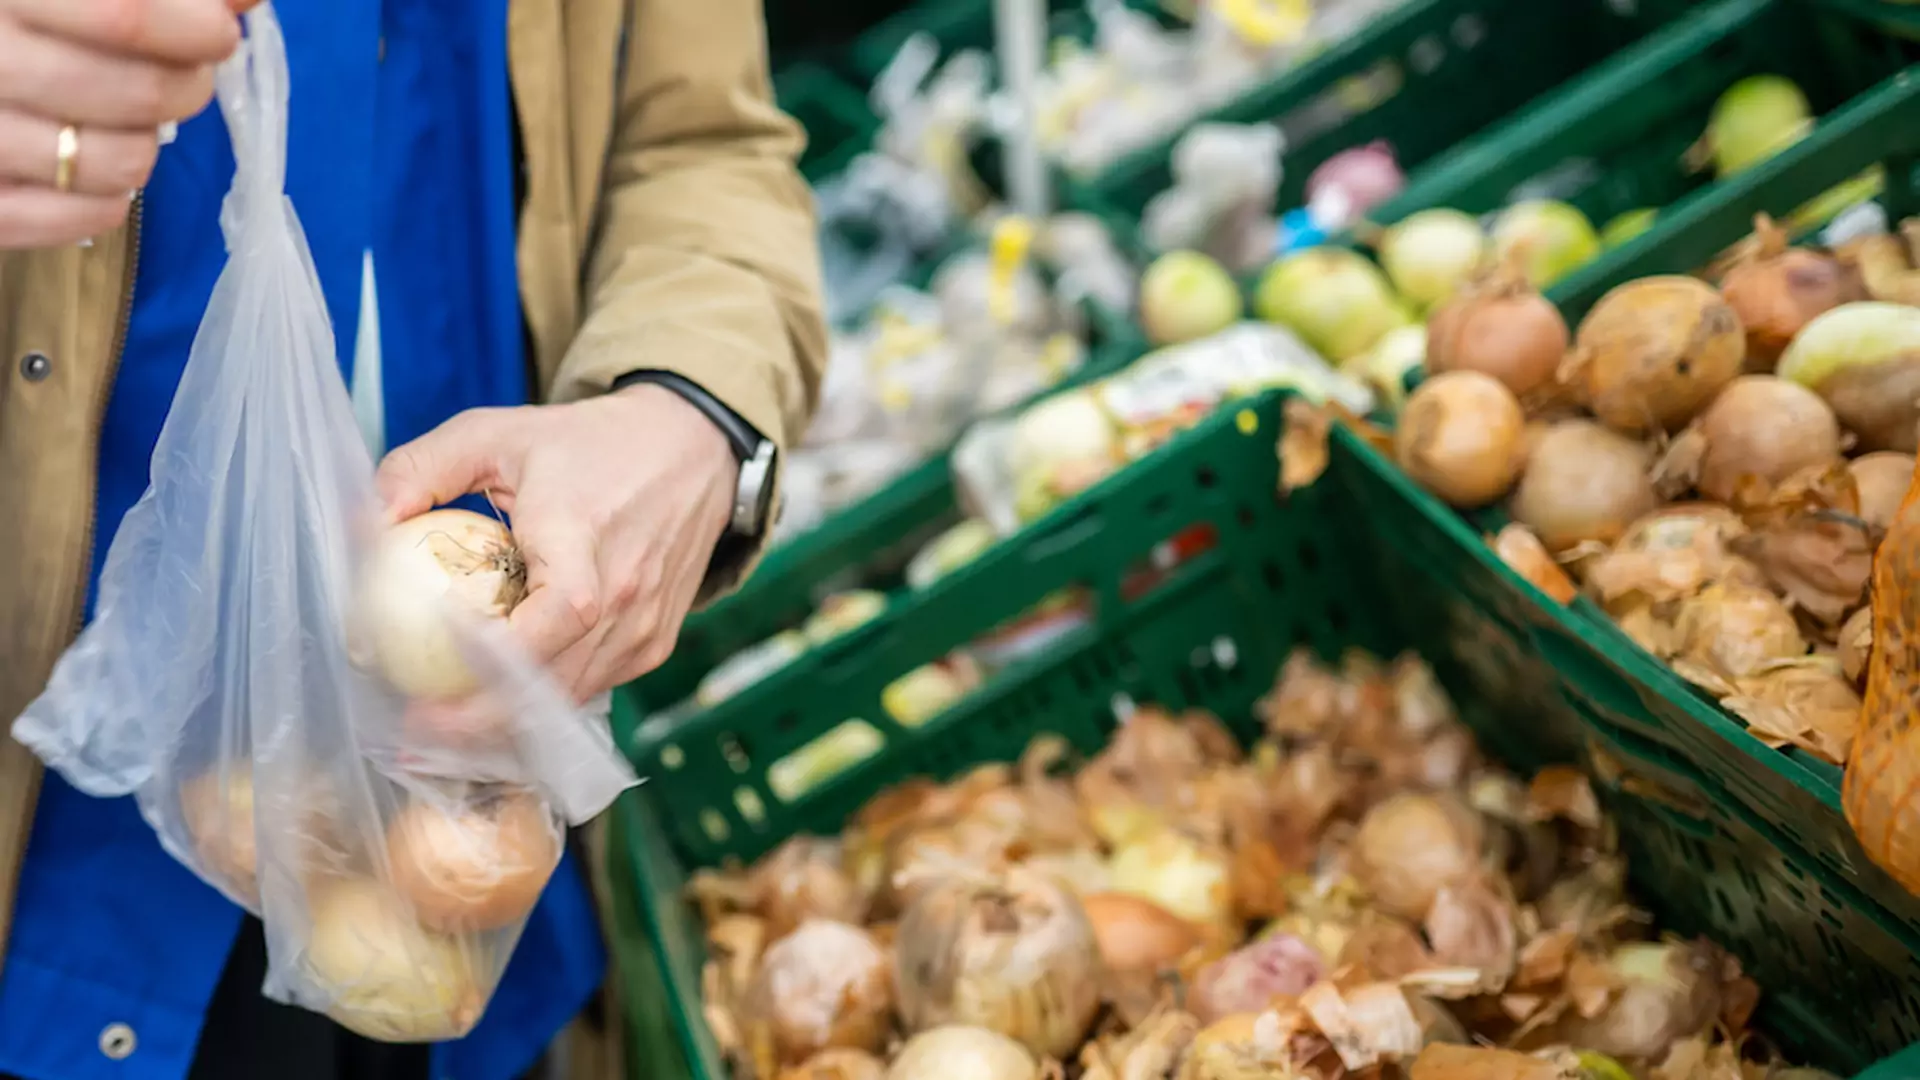 Francja z zakazem pakowania warzyw i owoców w plastik. W Polsce pojawił się podobny pomysł